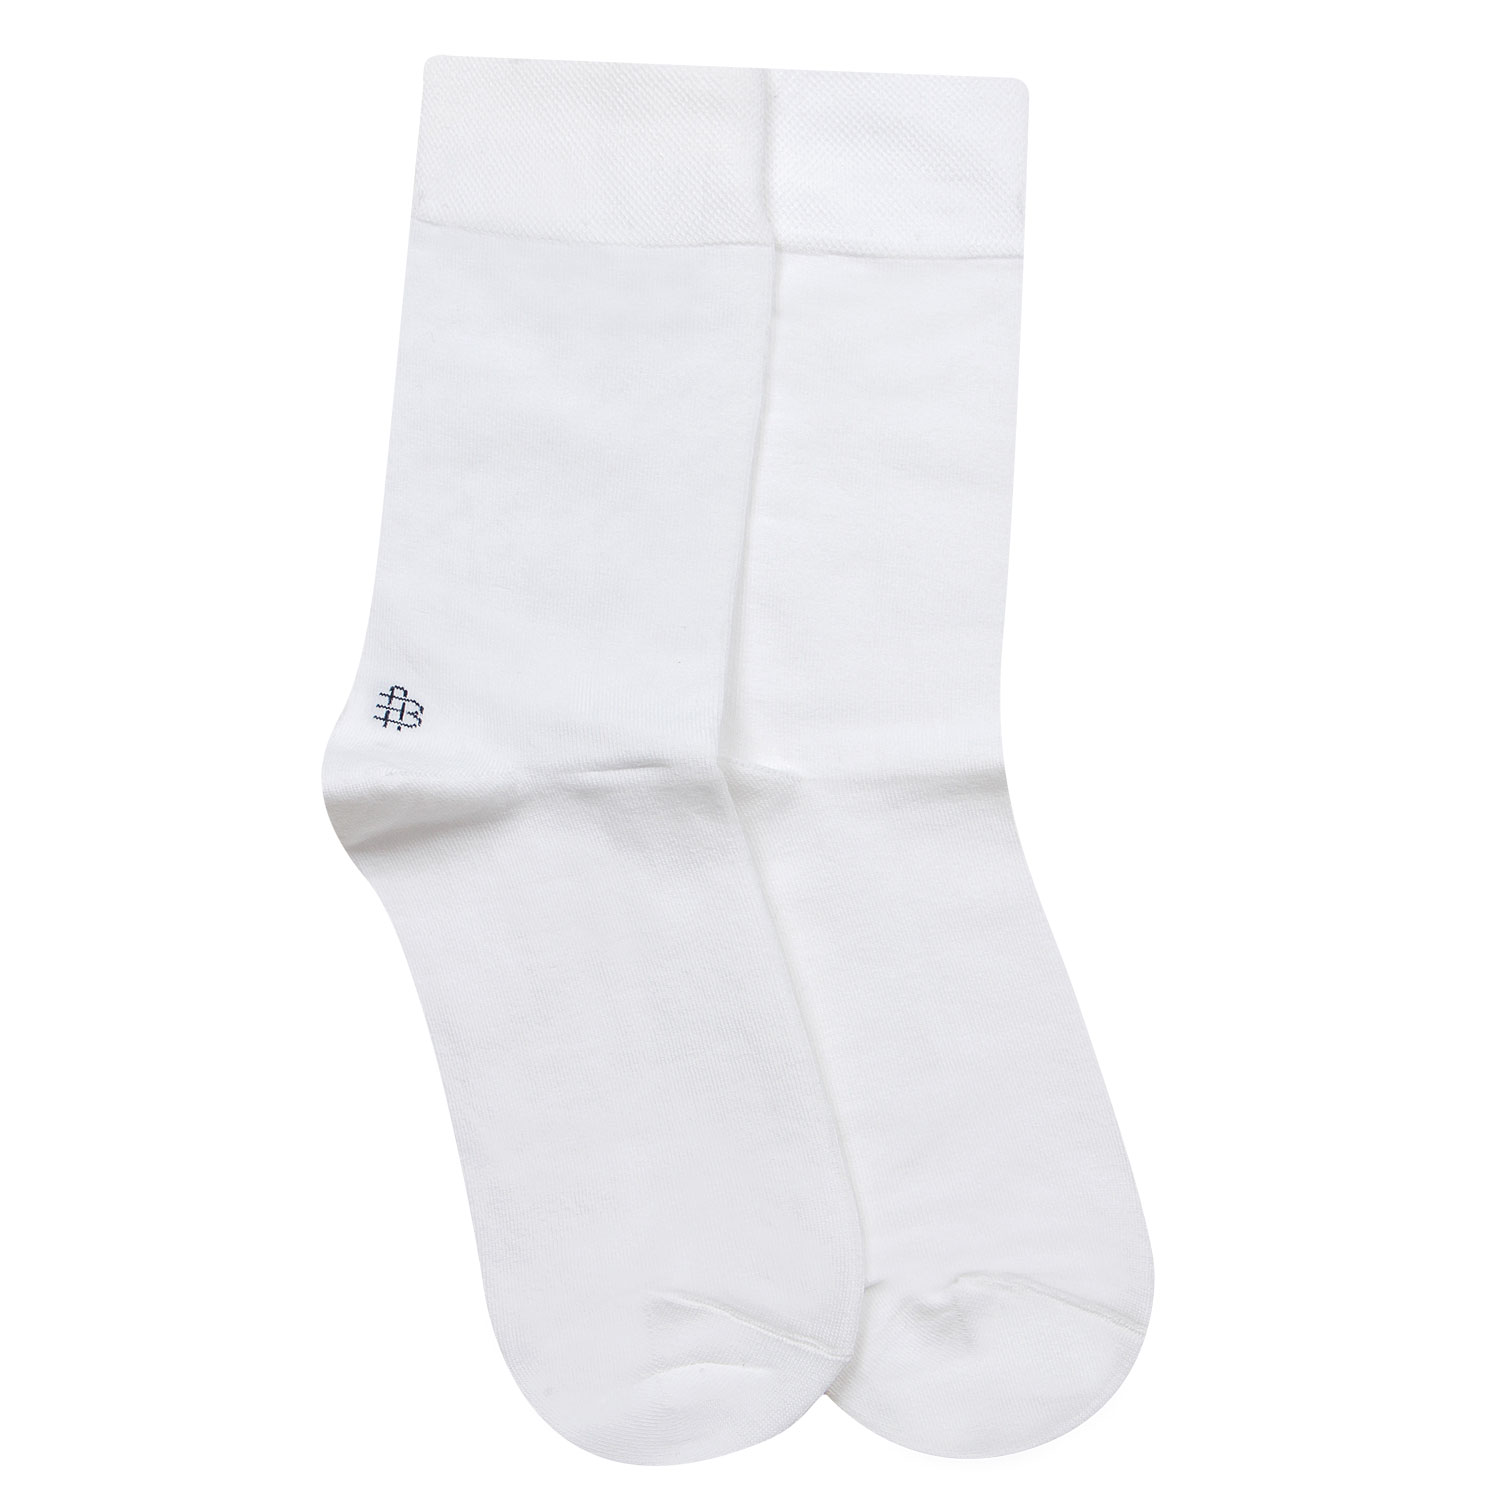 Buy Bonjour Odour free plain Socks in 10 colors for Men with Bonjour ...